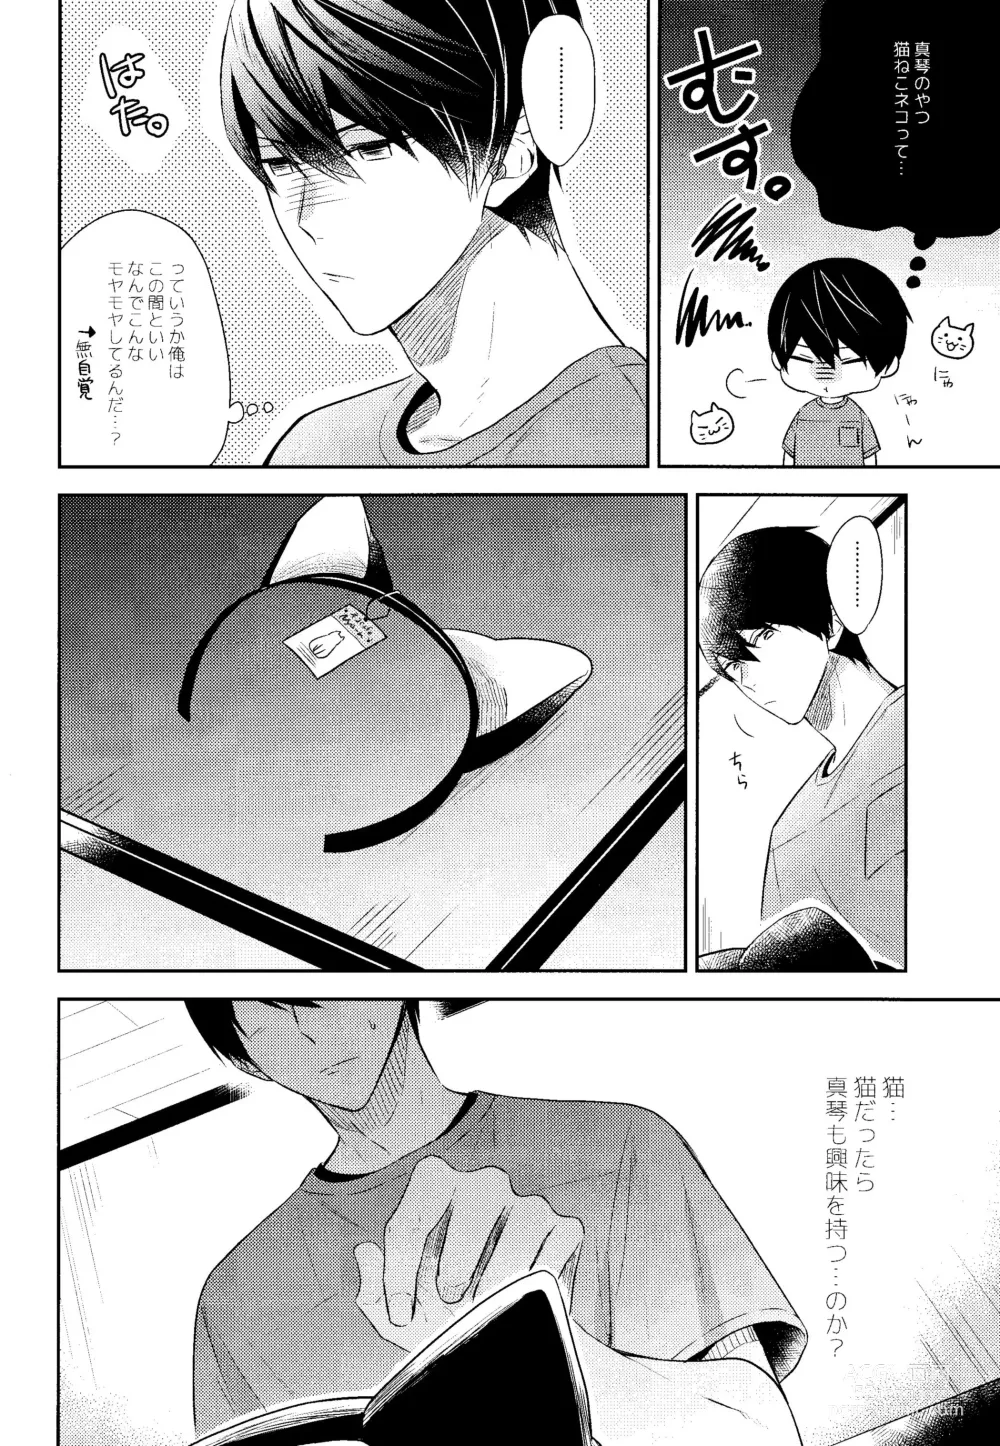 Page 11 of doujinshi Yakimochiyaki no Uchi no Neko